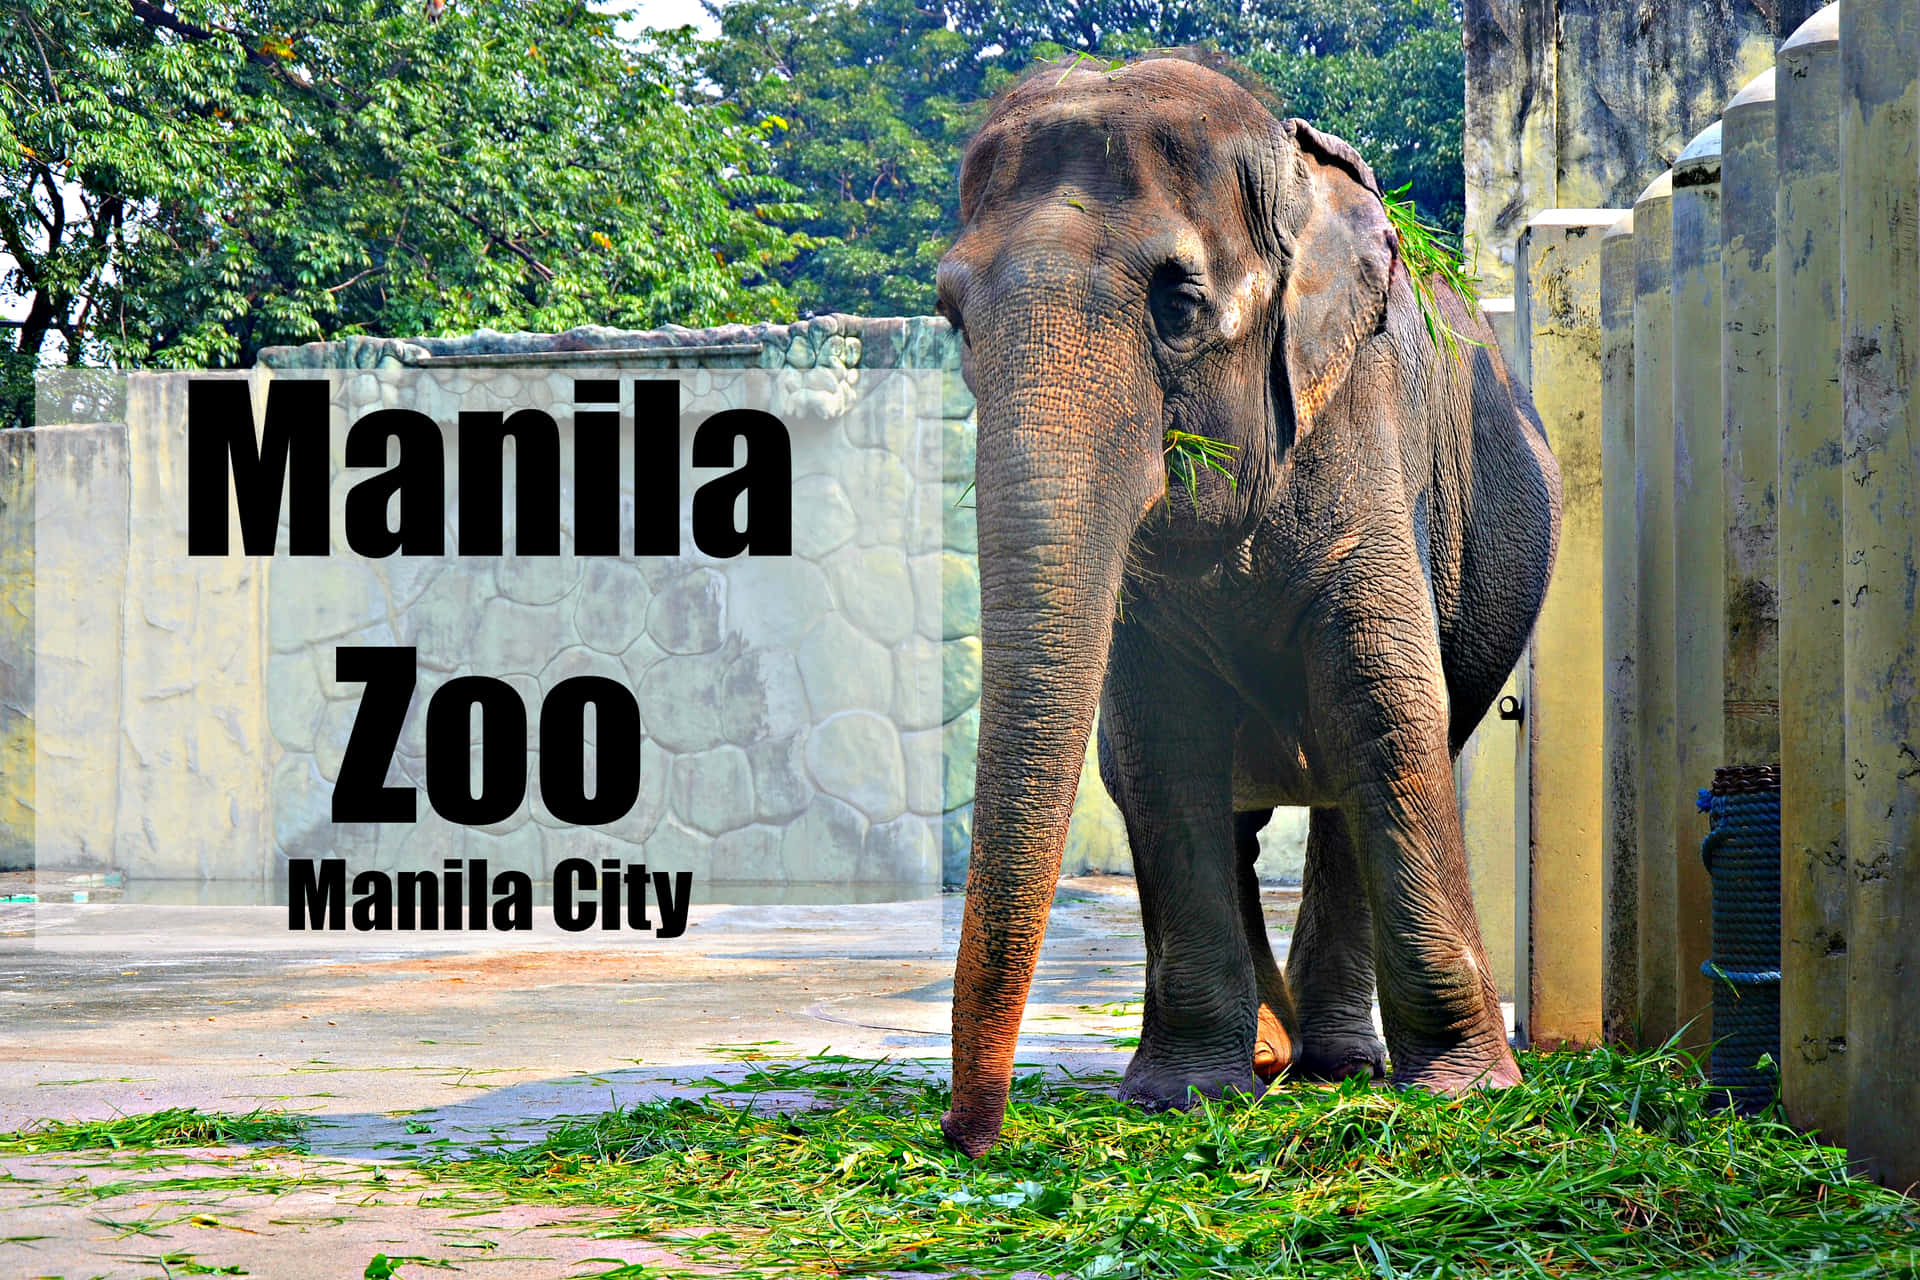 Animaisdo Jardim Zoológico De Manila - Fotos De Elefantes.